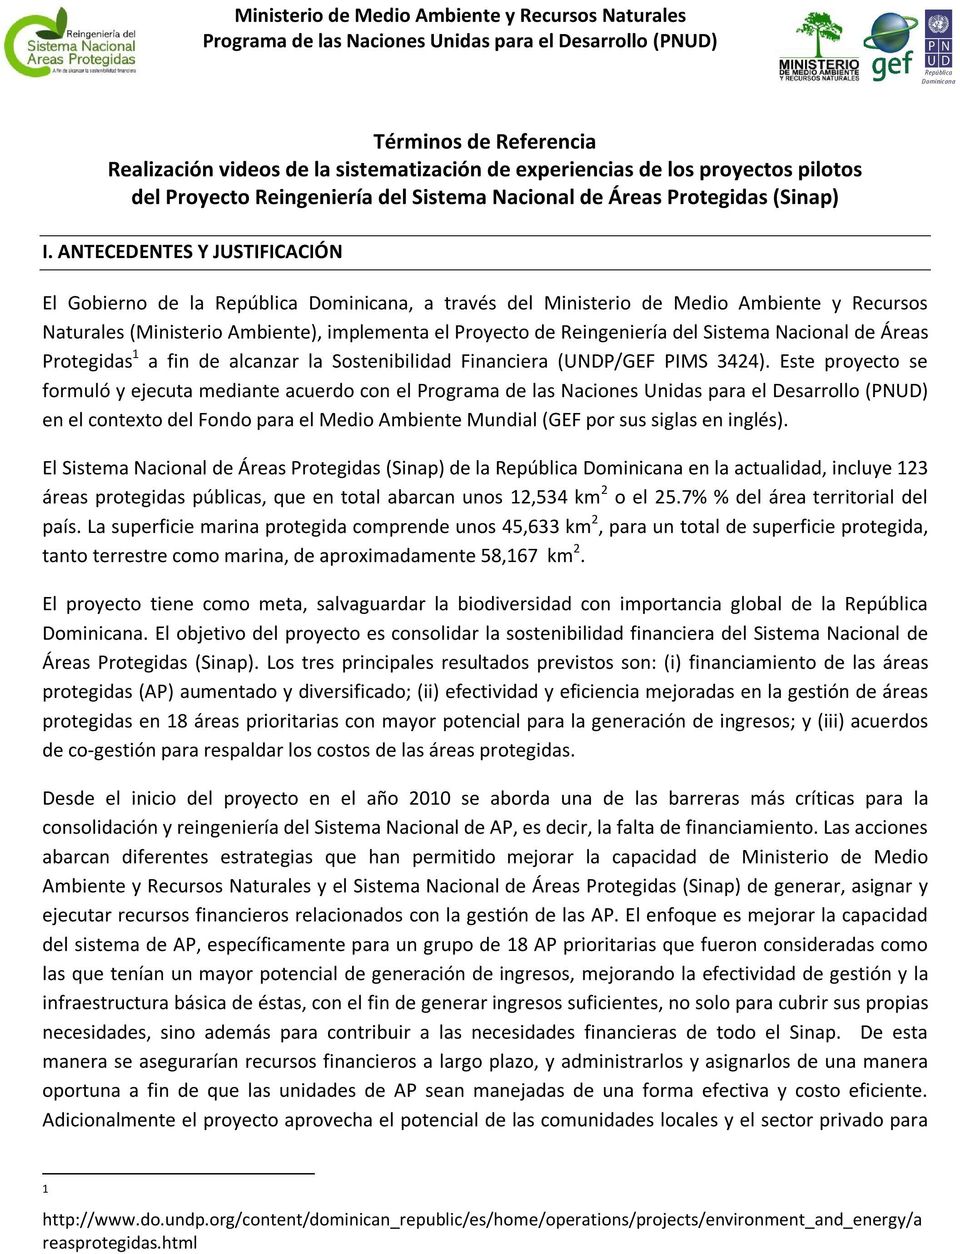 ANTECEDENTES Y JUSTIFICACIÓN El Gobierno de la República Dominicana, a través del Ministerio de Medio Ambiente y Recursos Naturales (Ministerio Ambiente), implementa el Proyecto de Reingeniería del